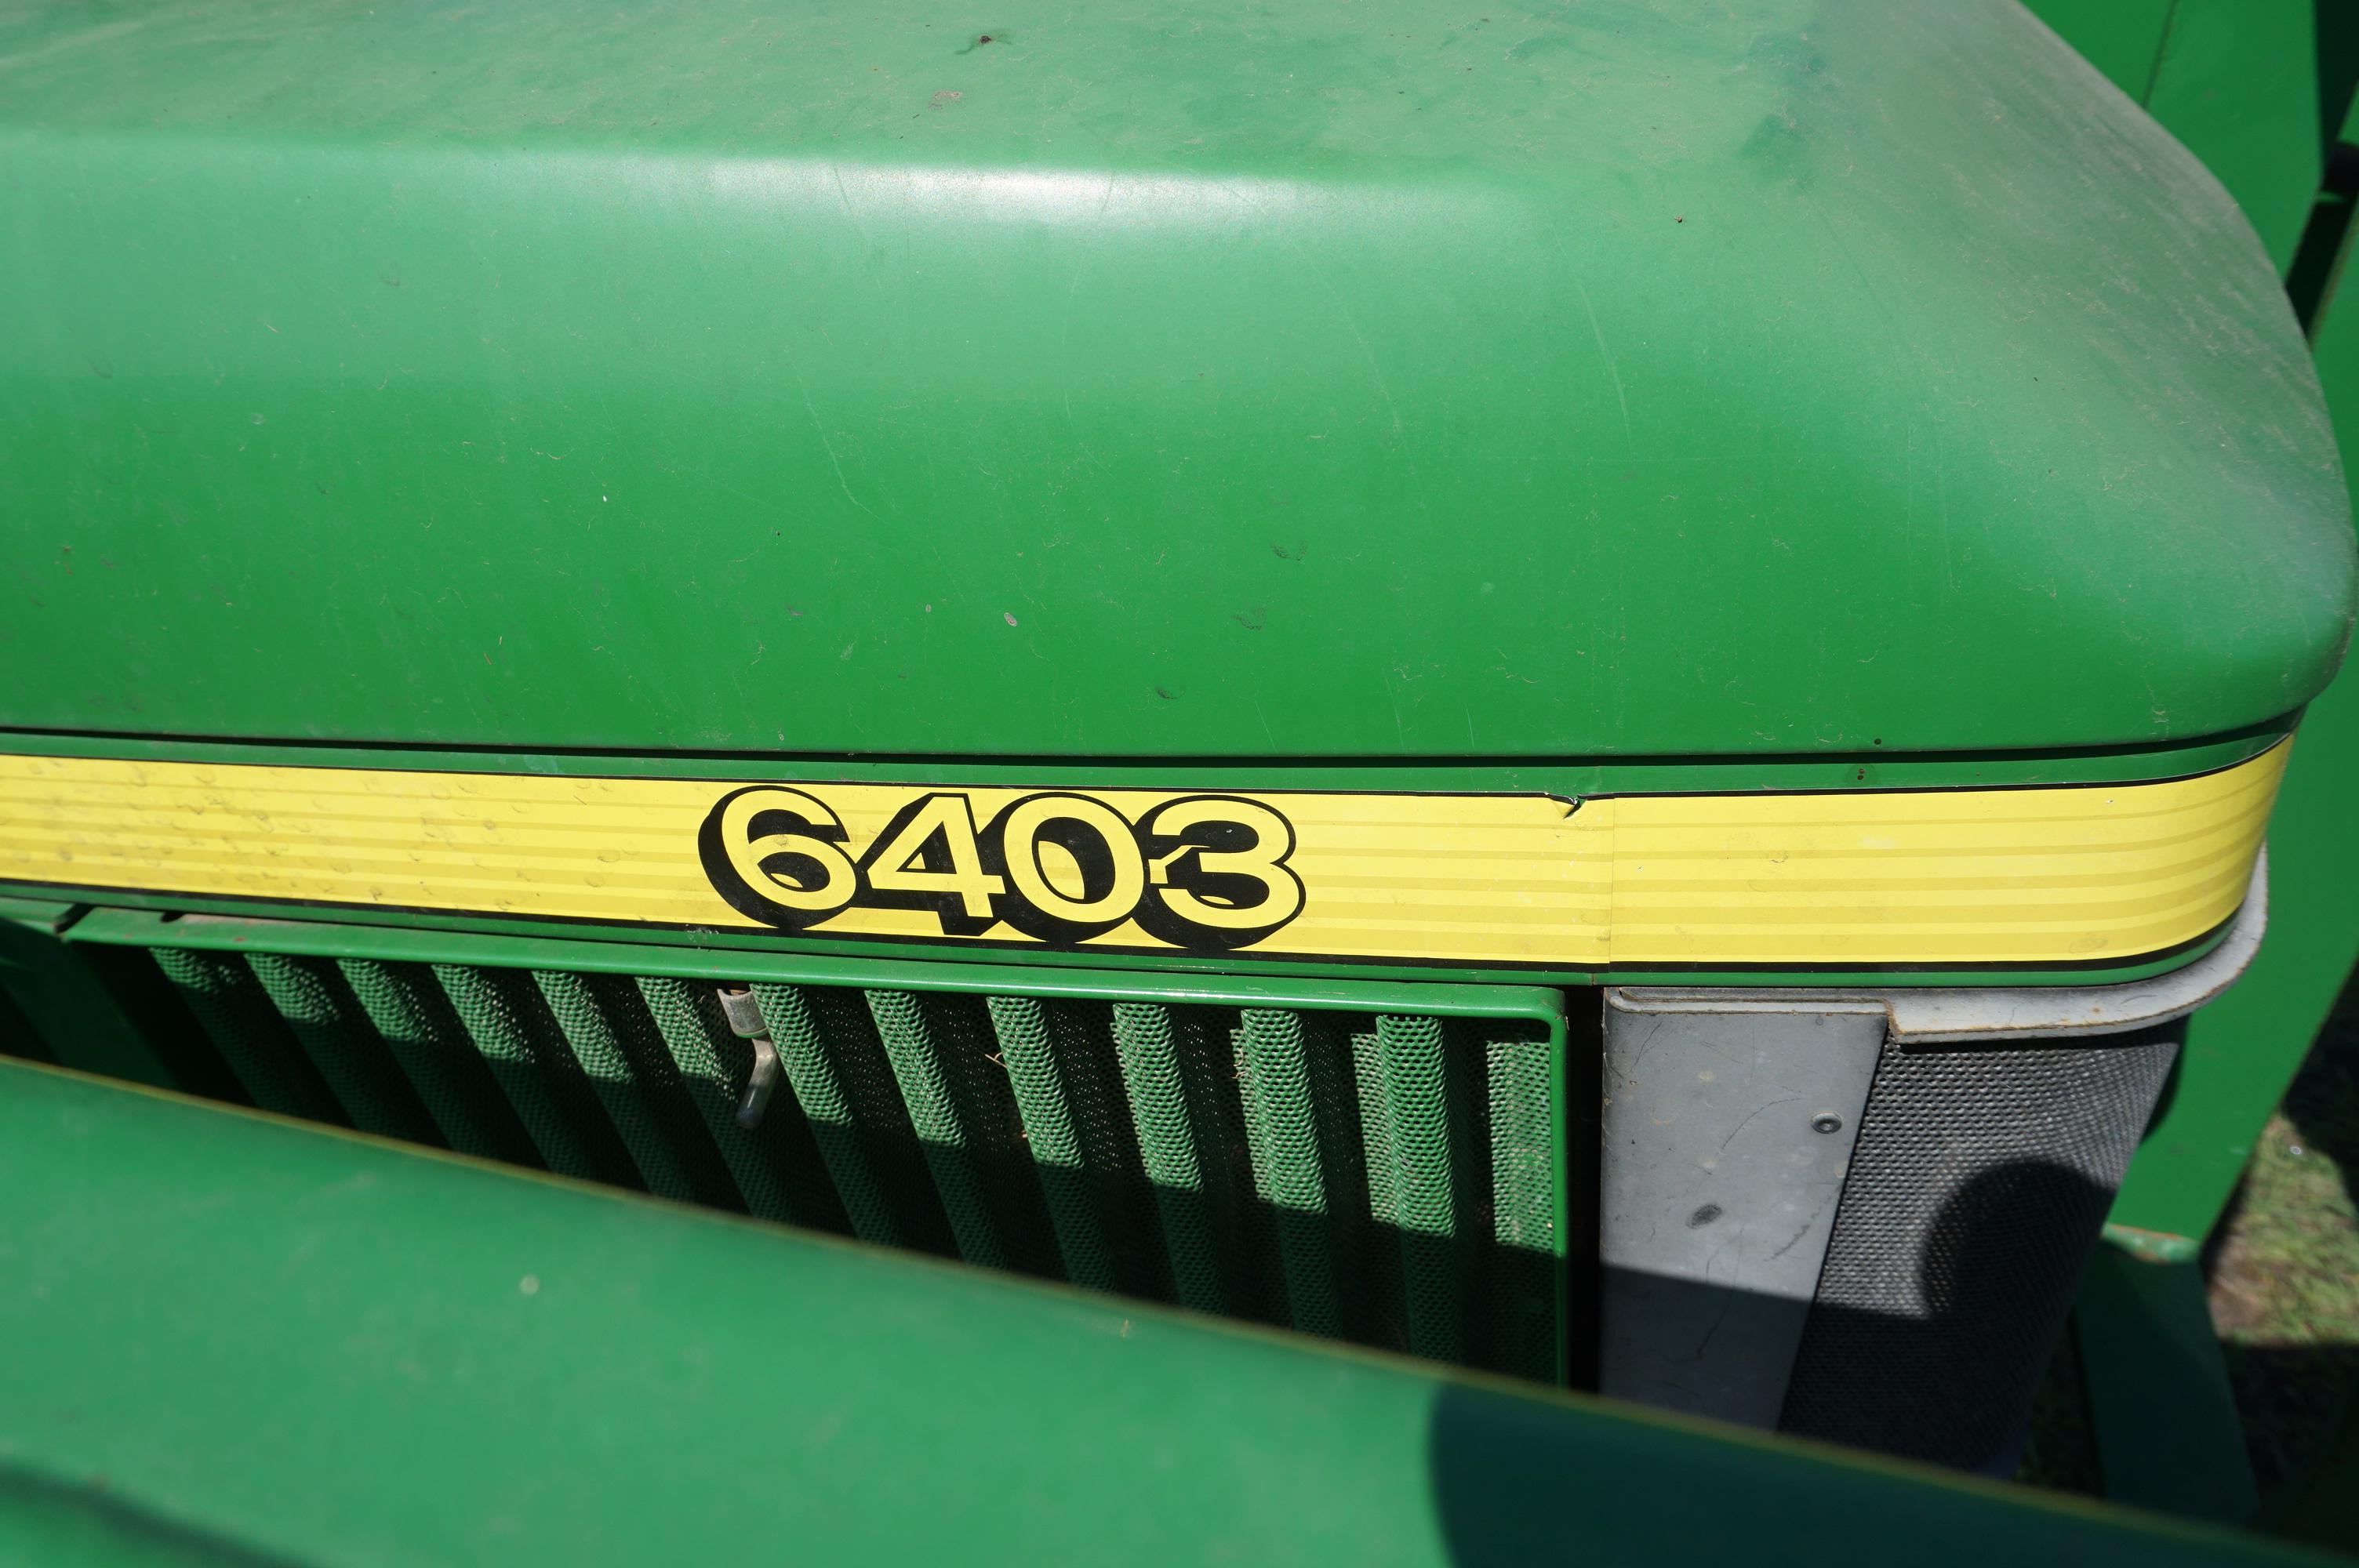 John Deere 6403 Cab Tractor with 542 Loader, Hayfork, Bucket. 1100 Hours